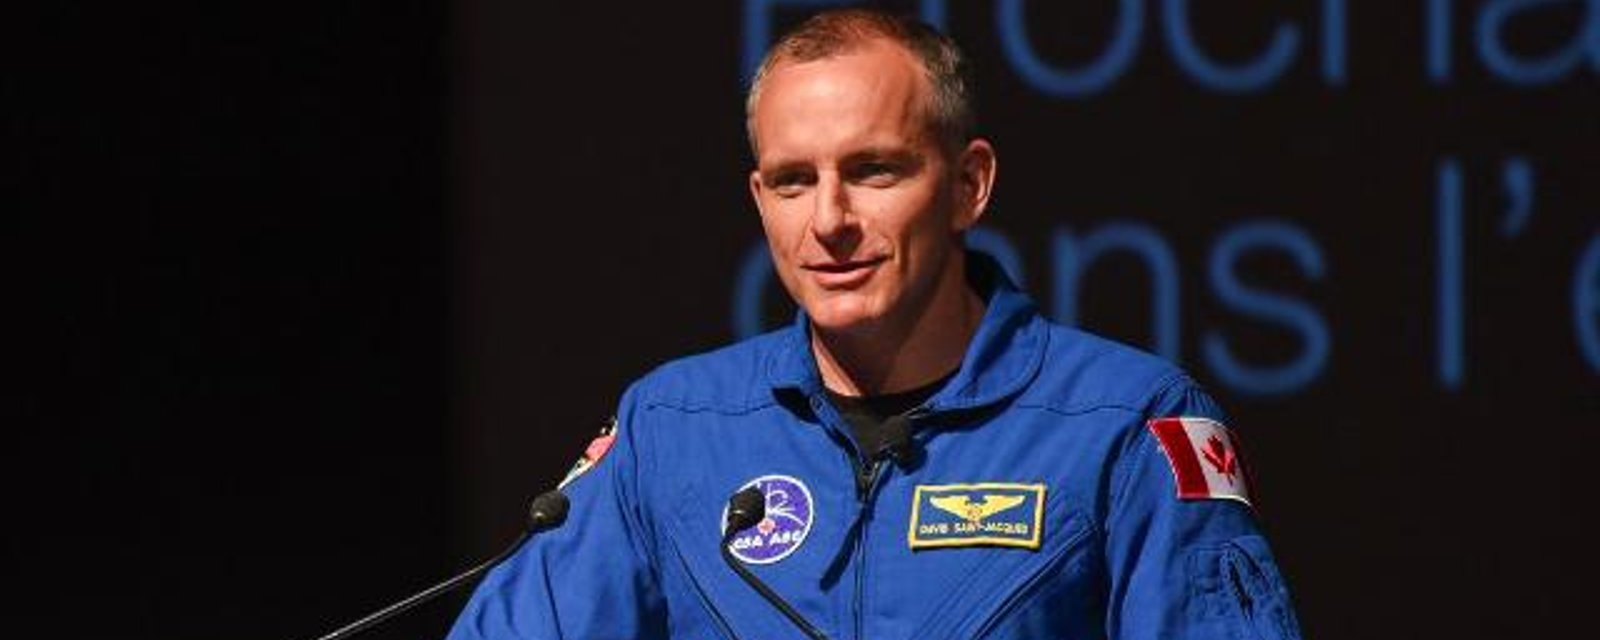 L'astronaute David Saint-Jacques raconte une histoire aux enfants en direct de l'espace